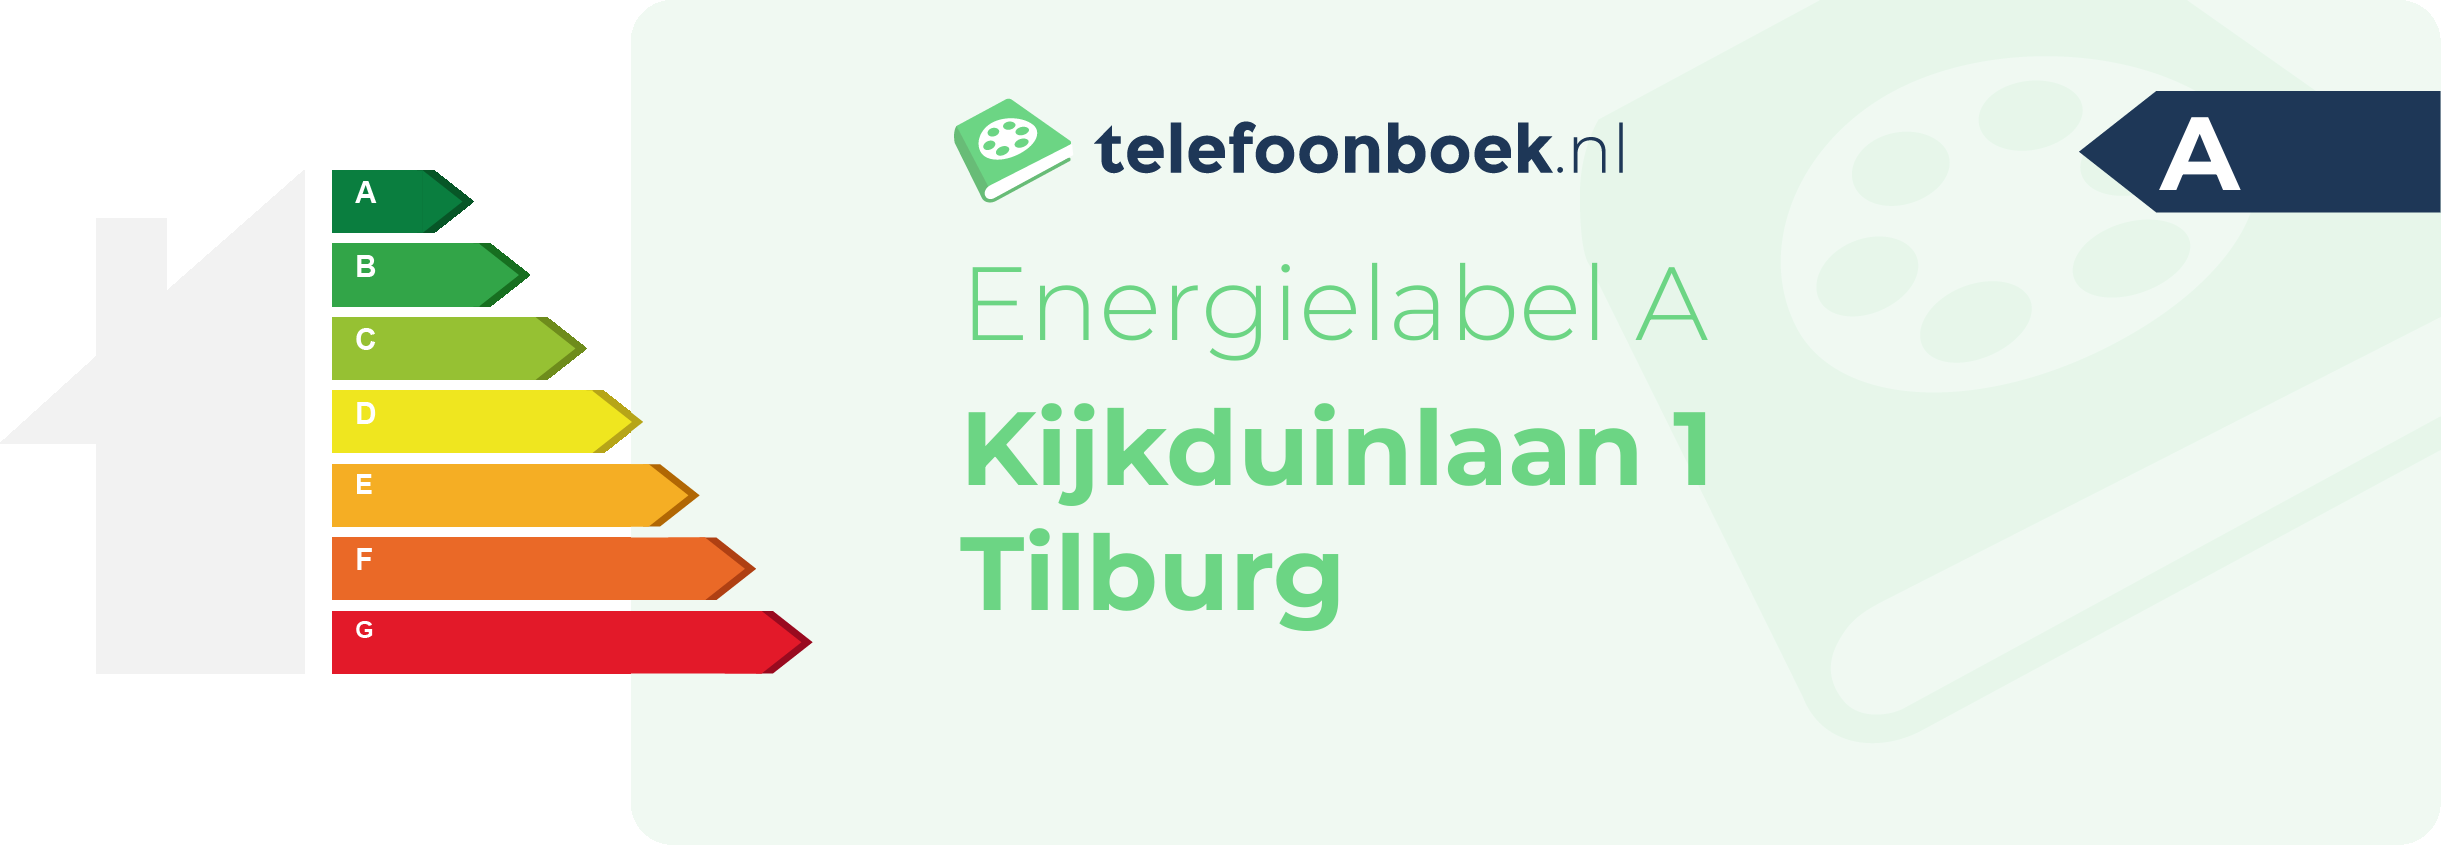 Energielabel Kijkduinlaan 1 Tilburg